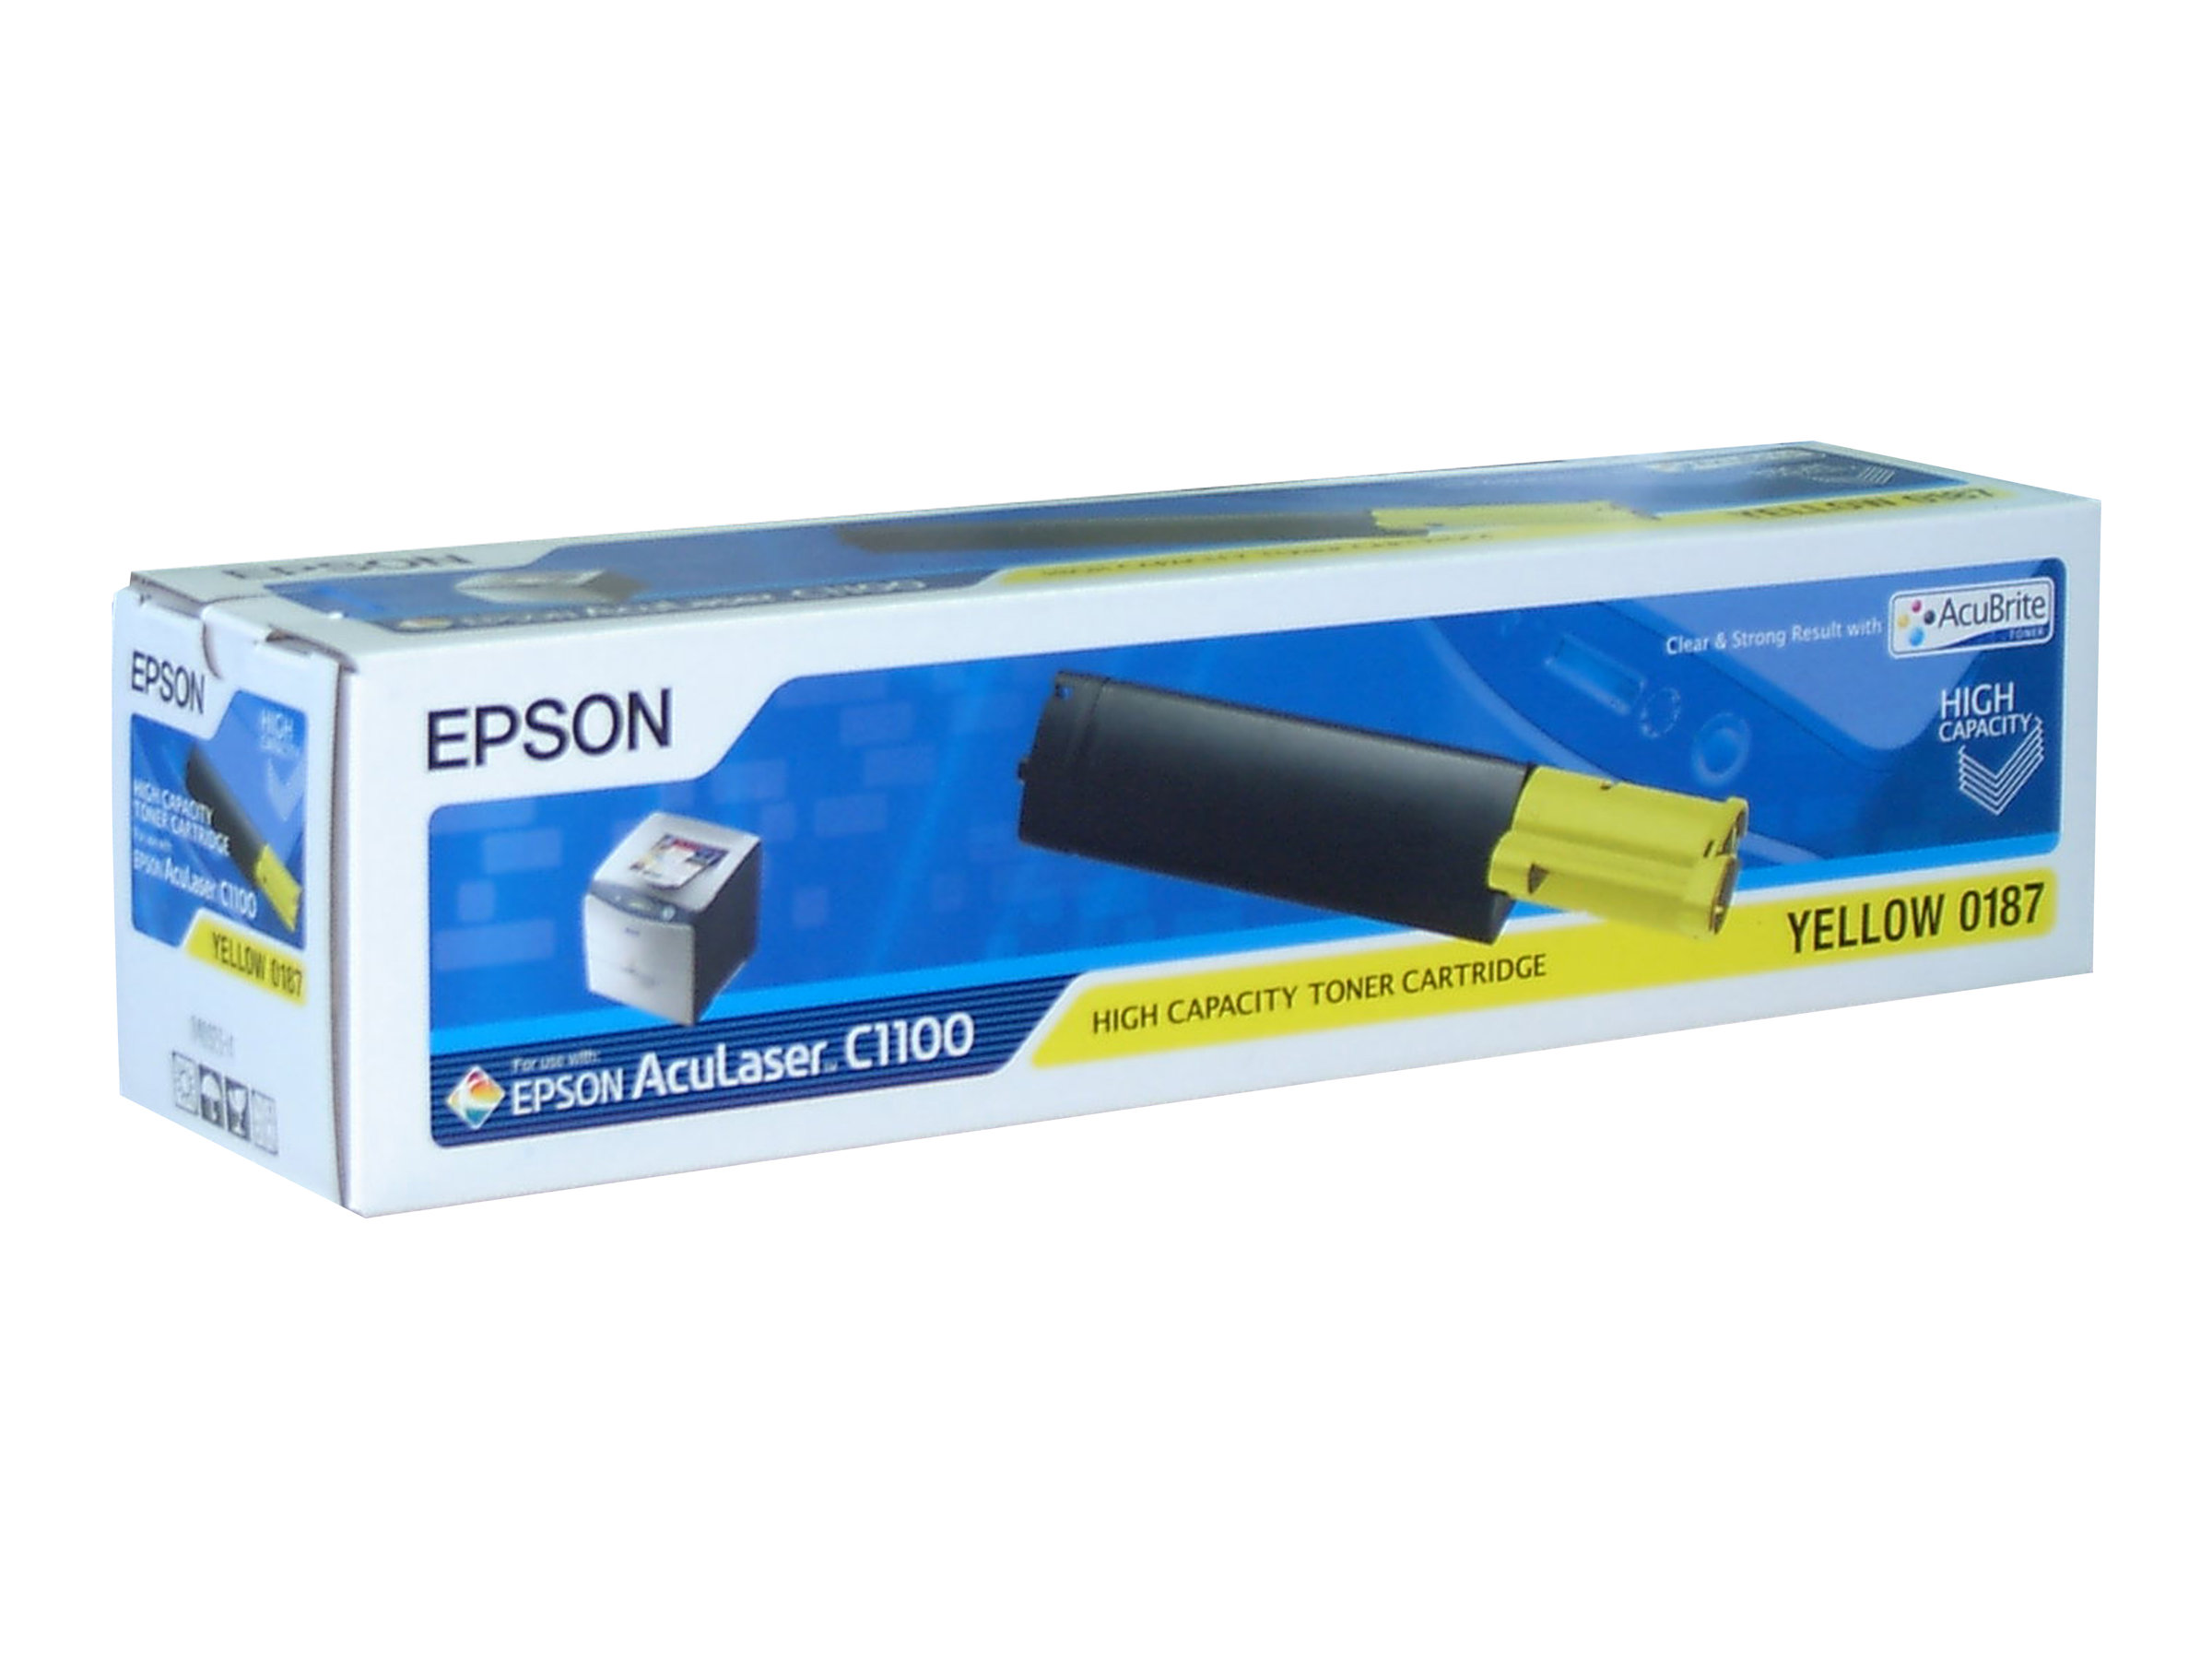 Epson 0187 - Mit hoher Kapazitt - Gelb - Original